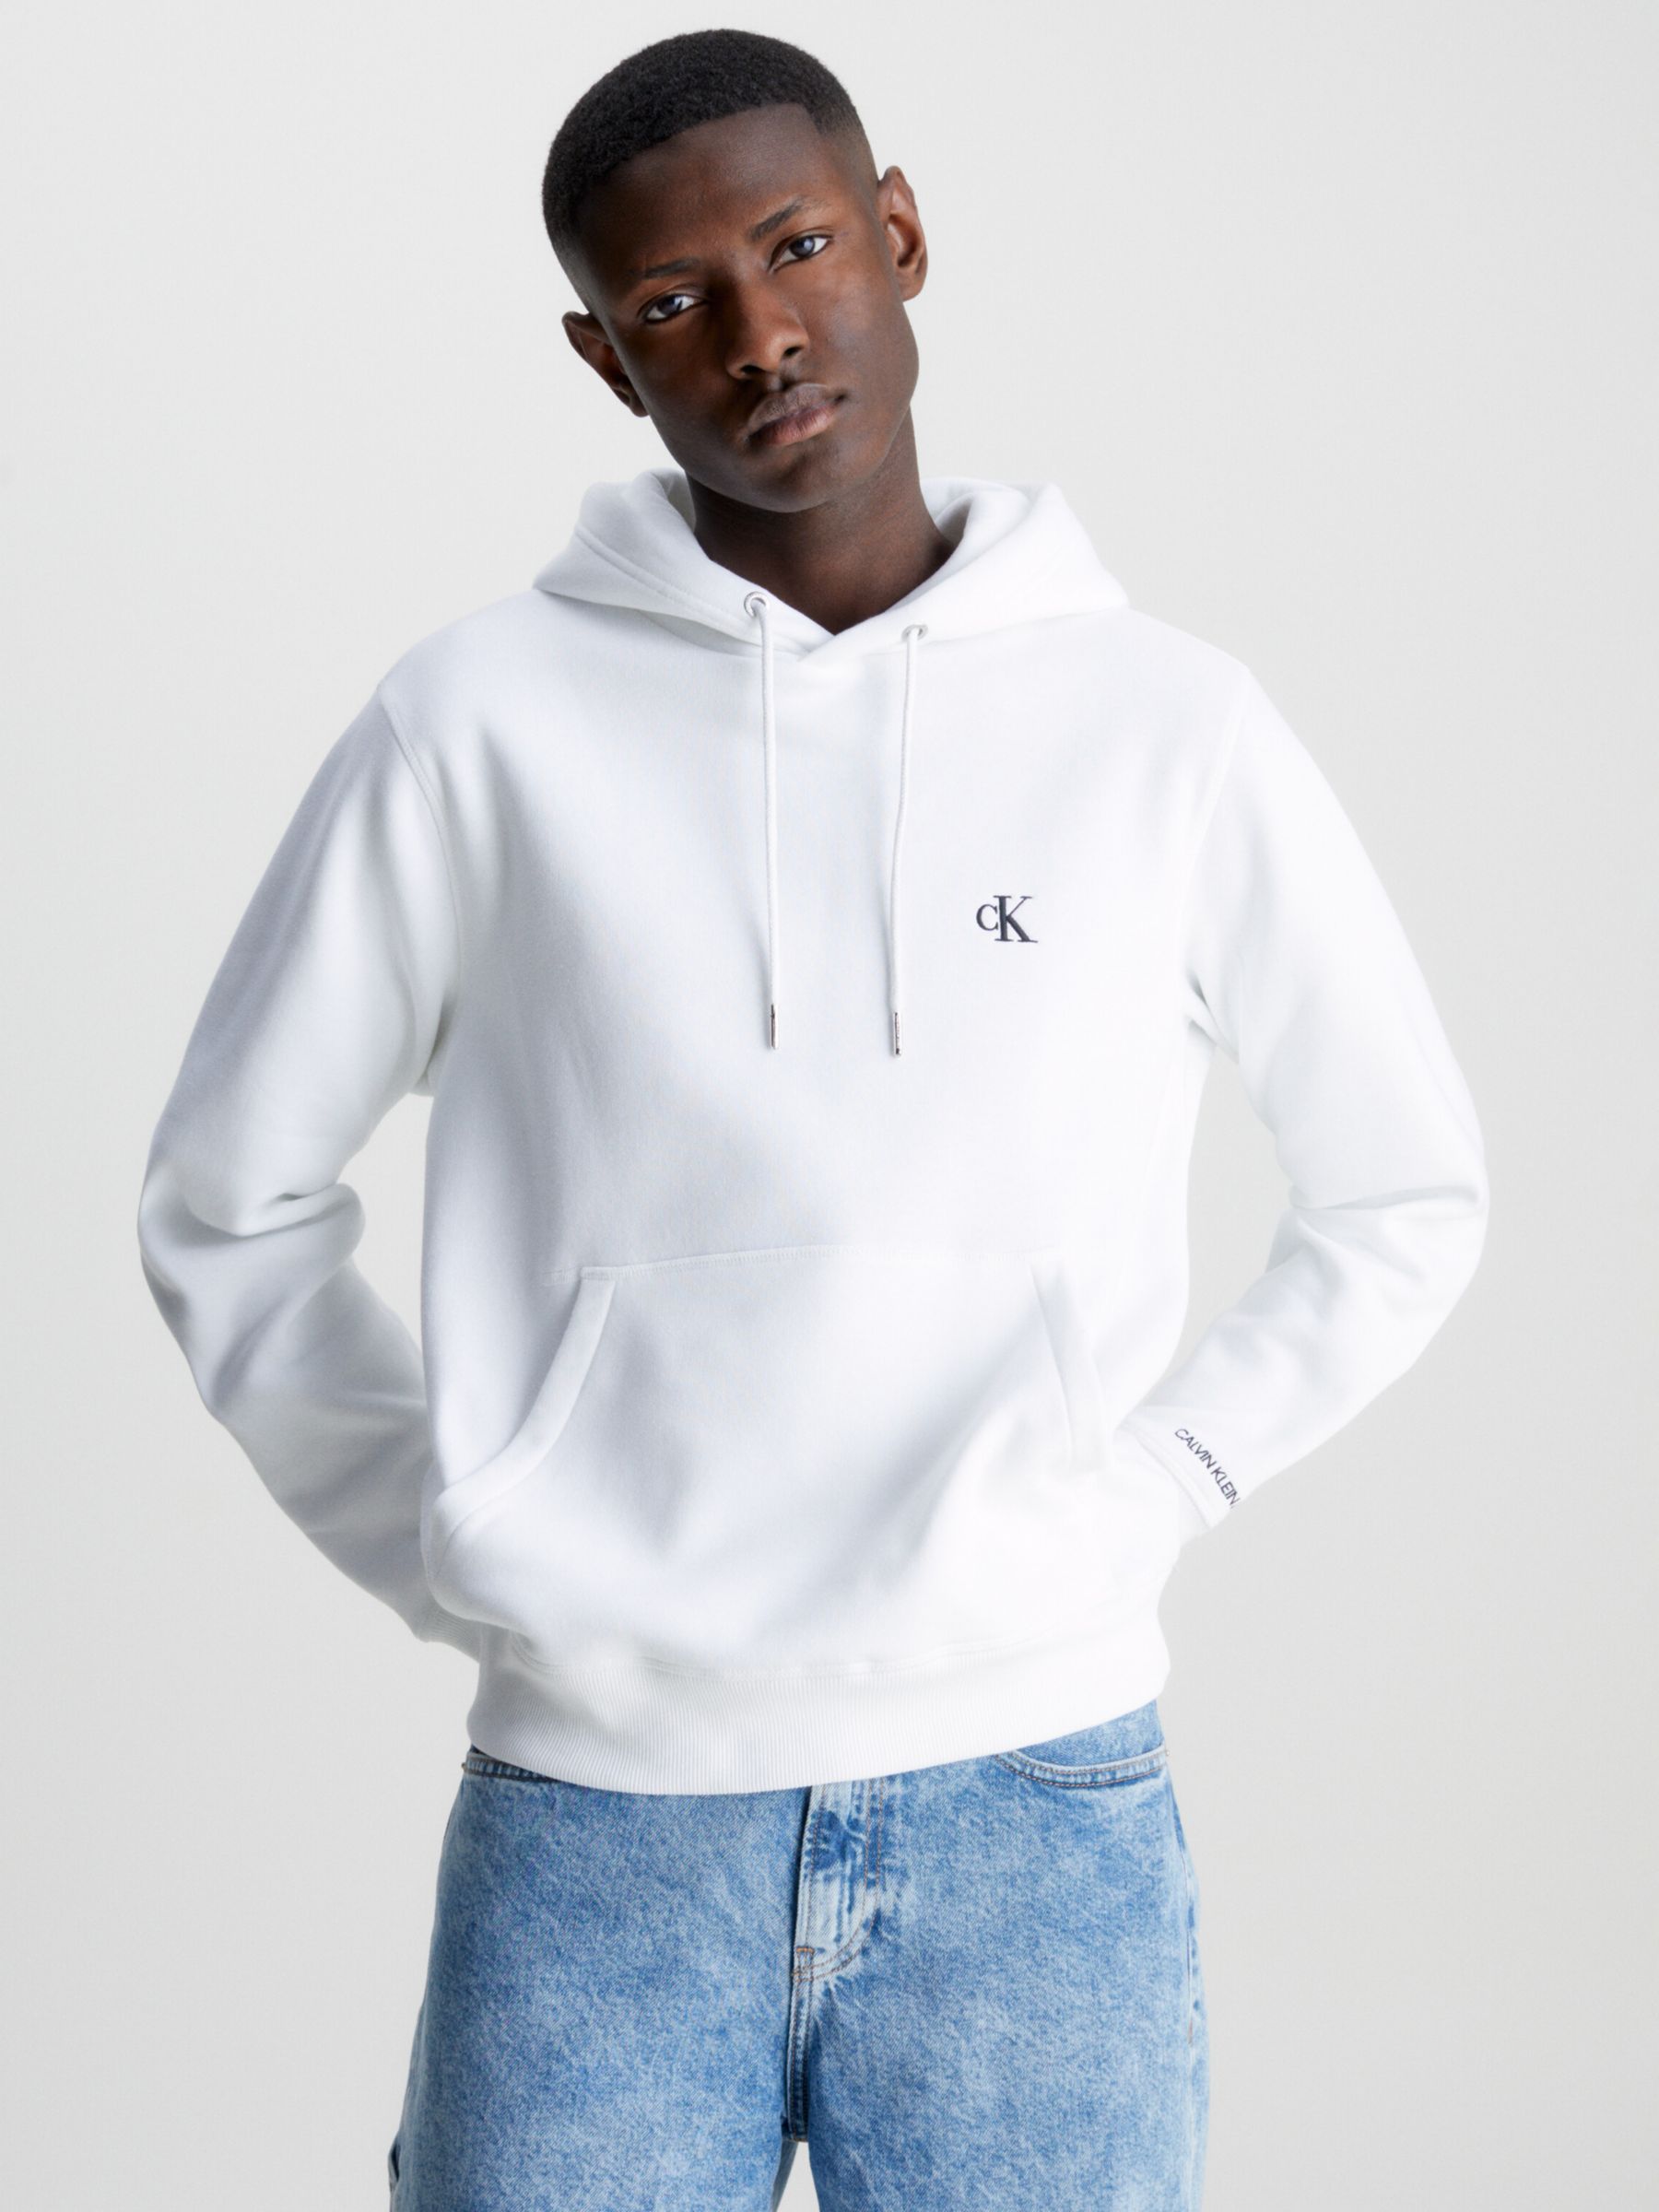 15 Best Calvin Klein sweatshirt ideas  calvin klein sweatshirts, calvin  klein, calvin